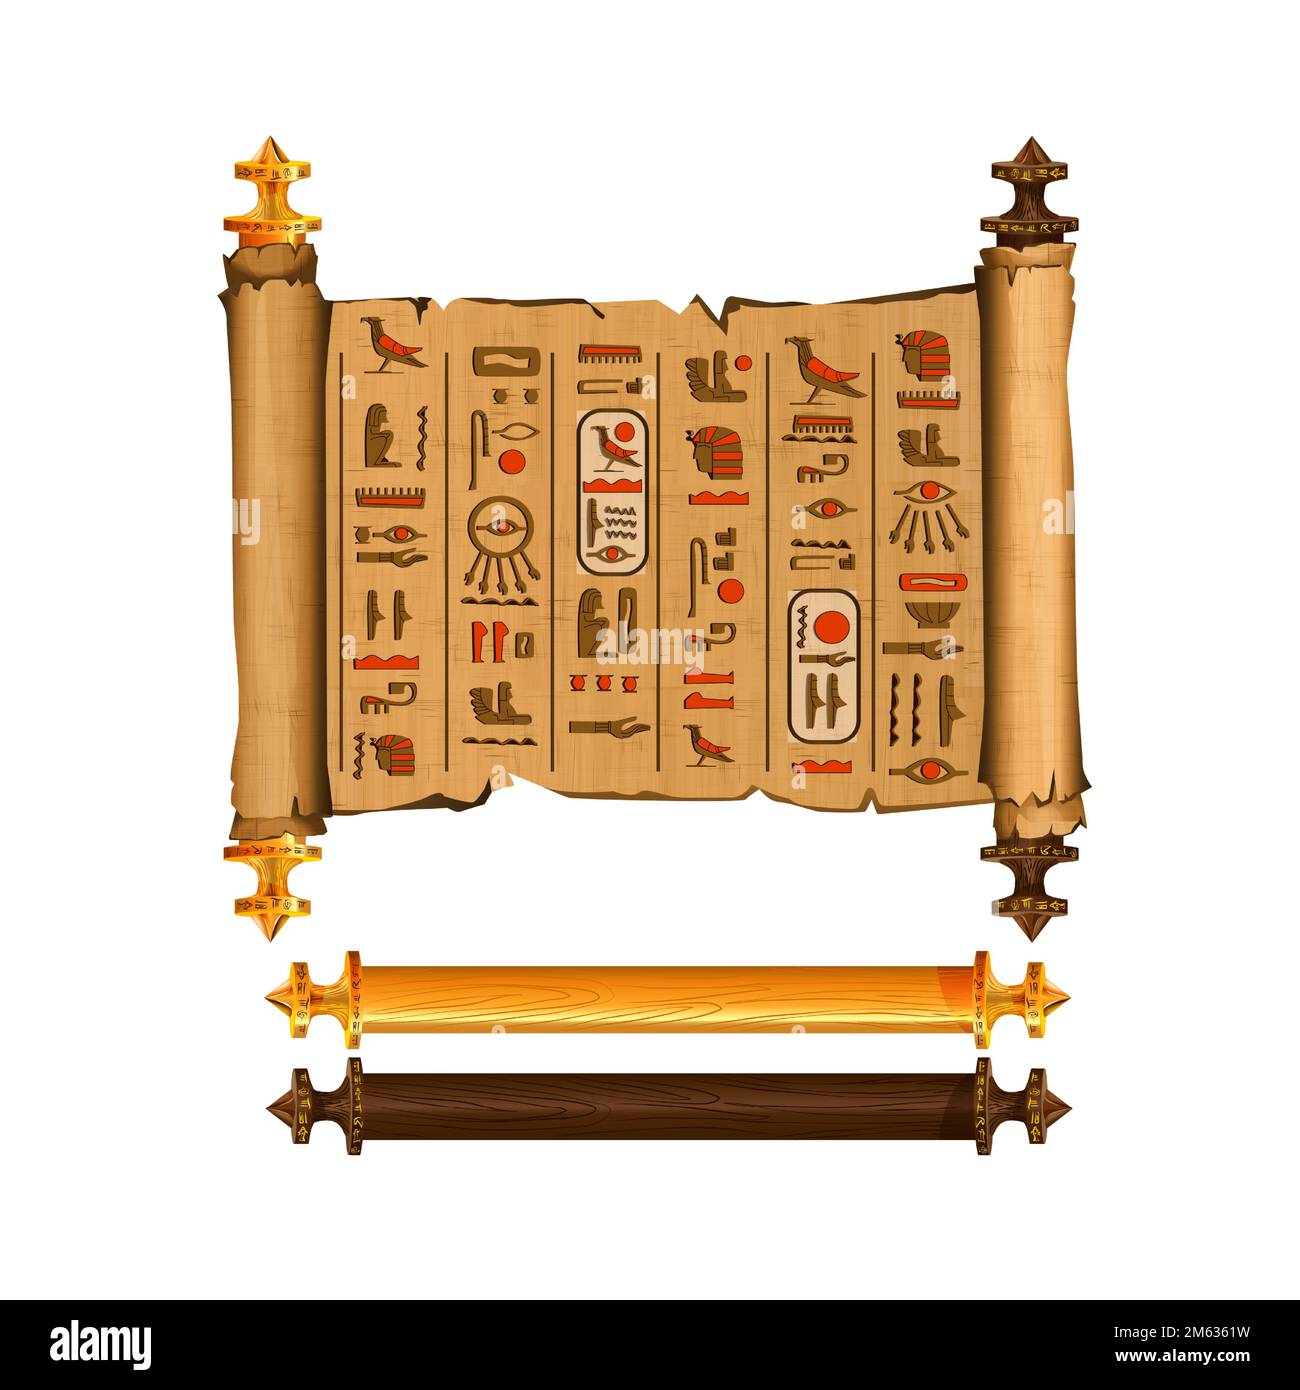 Antico Egitto papiro rotolo cartoon collezione vettoriale con geroglifici e cultura egiziana simboli religiosi, antichi dei e uccello sacro, manoscritto isolato con elementi di legno scuro e chiaro. Illustrazione Vettoriale